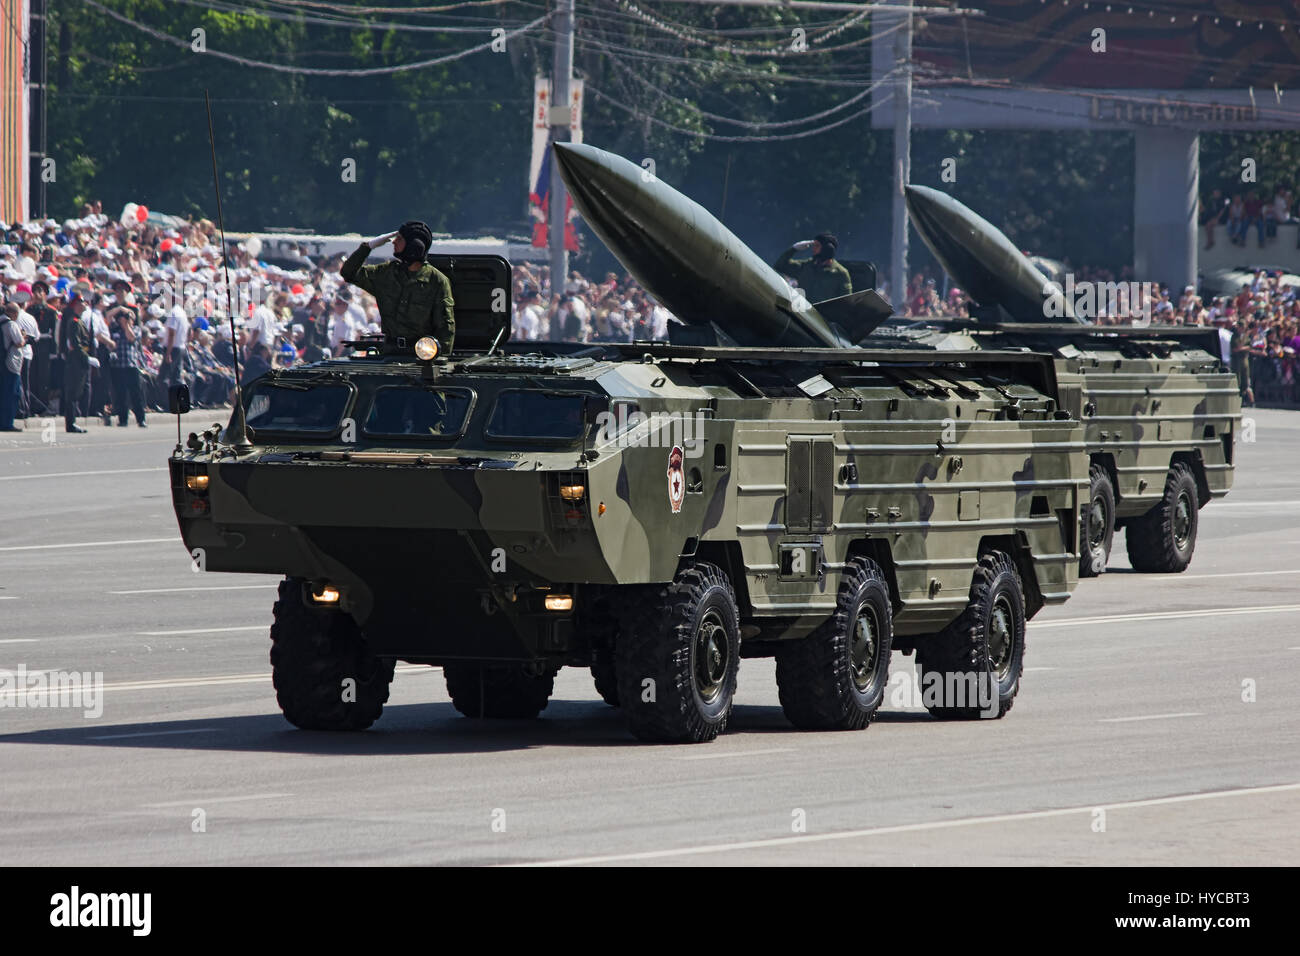 Taktische Rakete "Tochka-U", Rostow am Don, Russland, 9. Mai 2012. Siegesparade auf dem Theaterplatz. Stockfoto